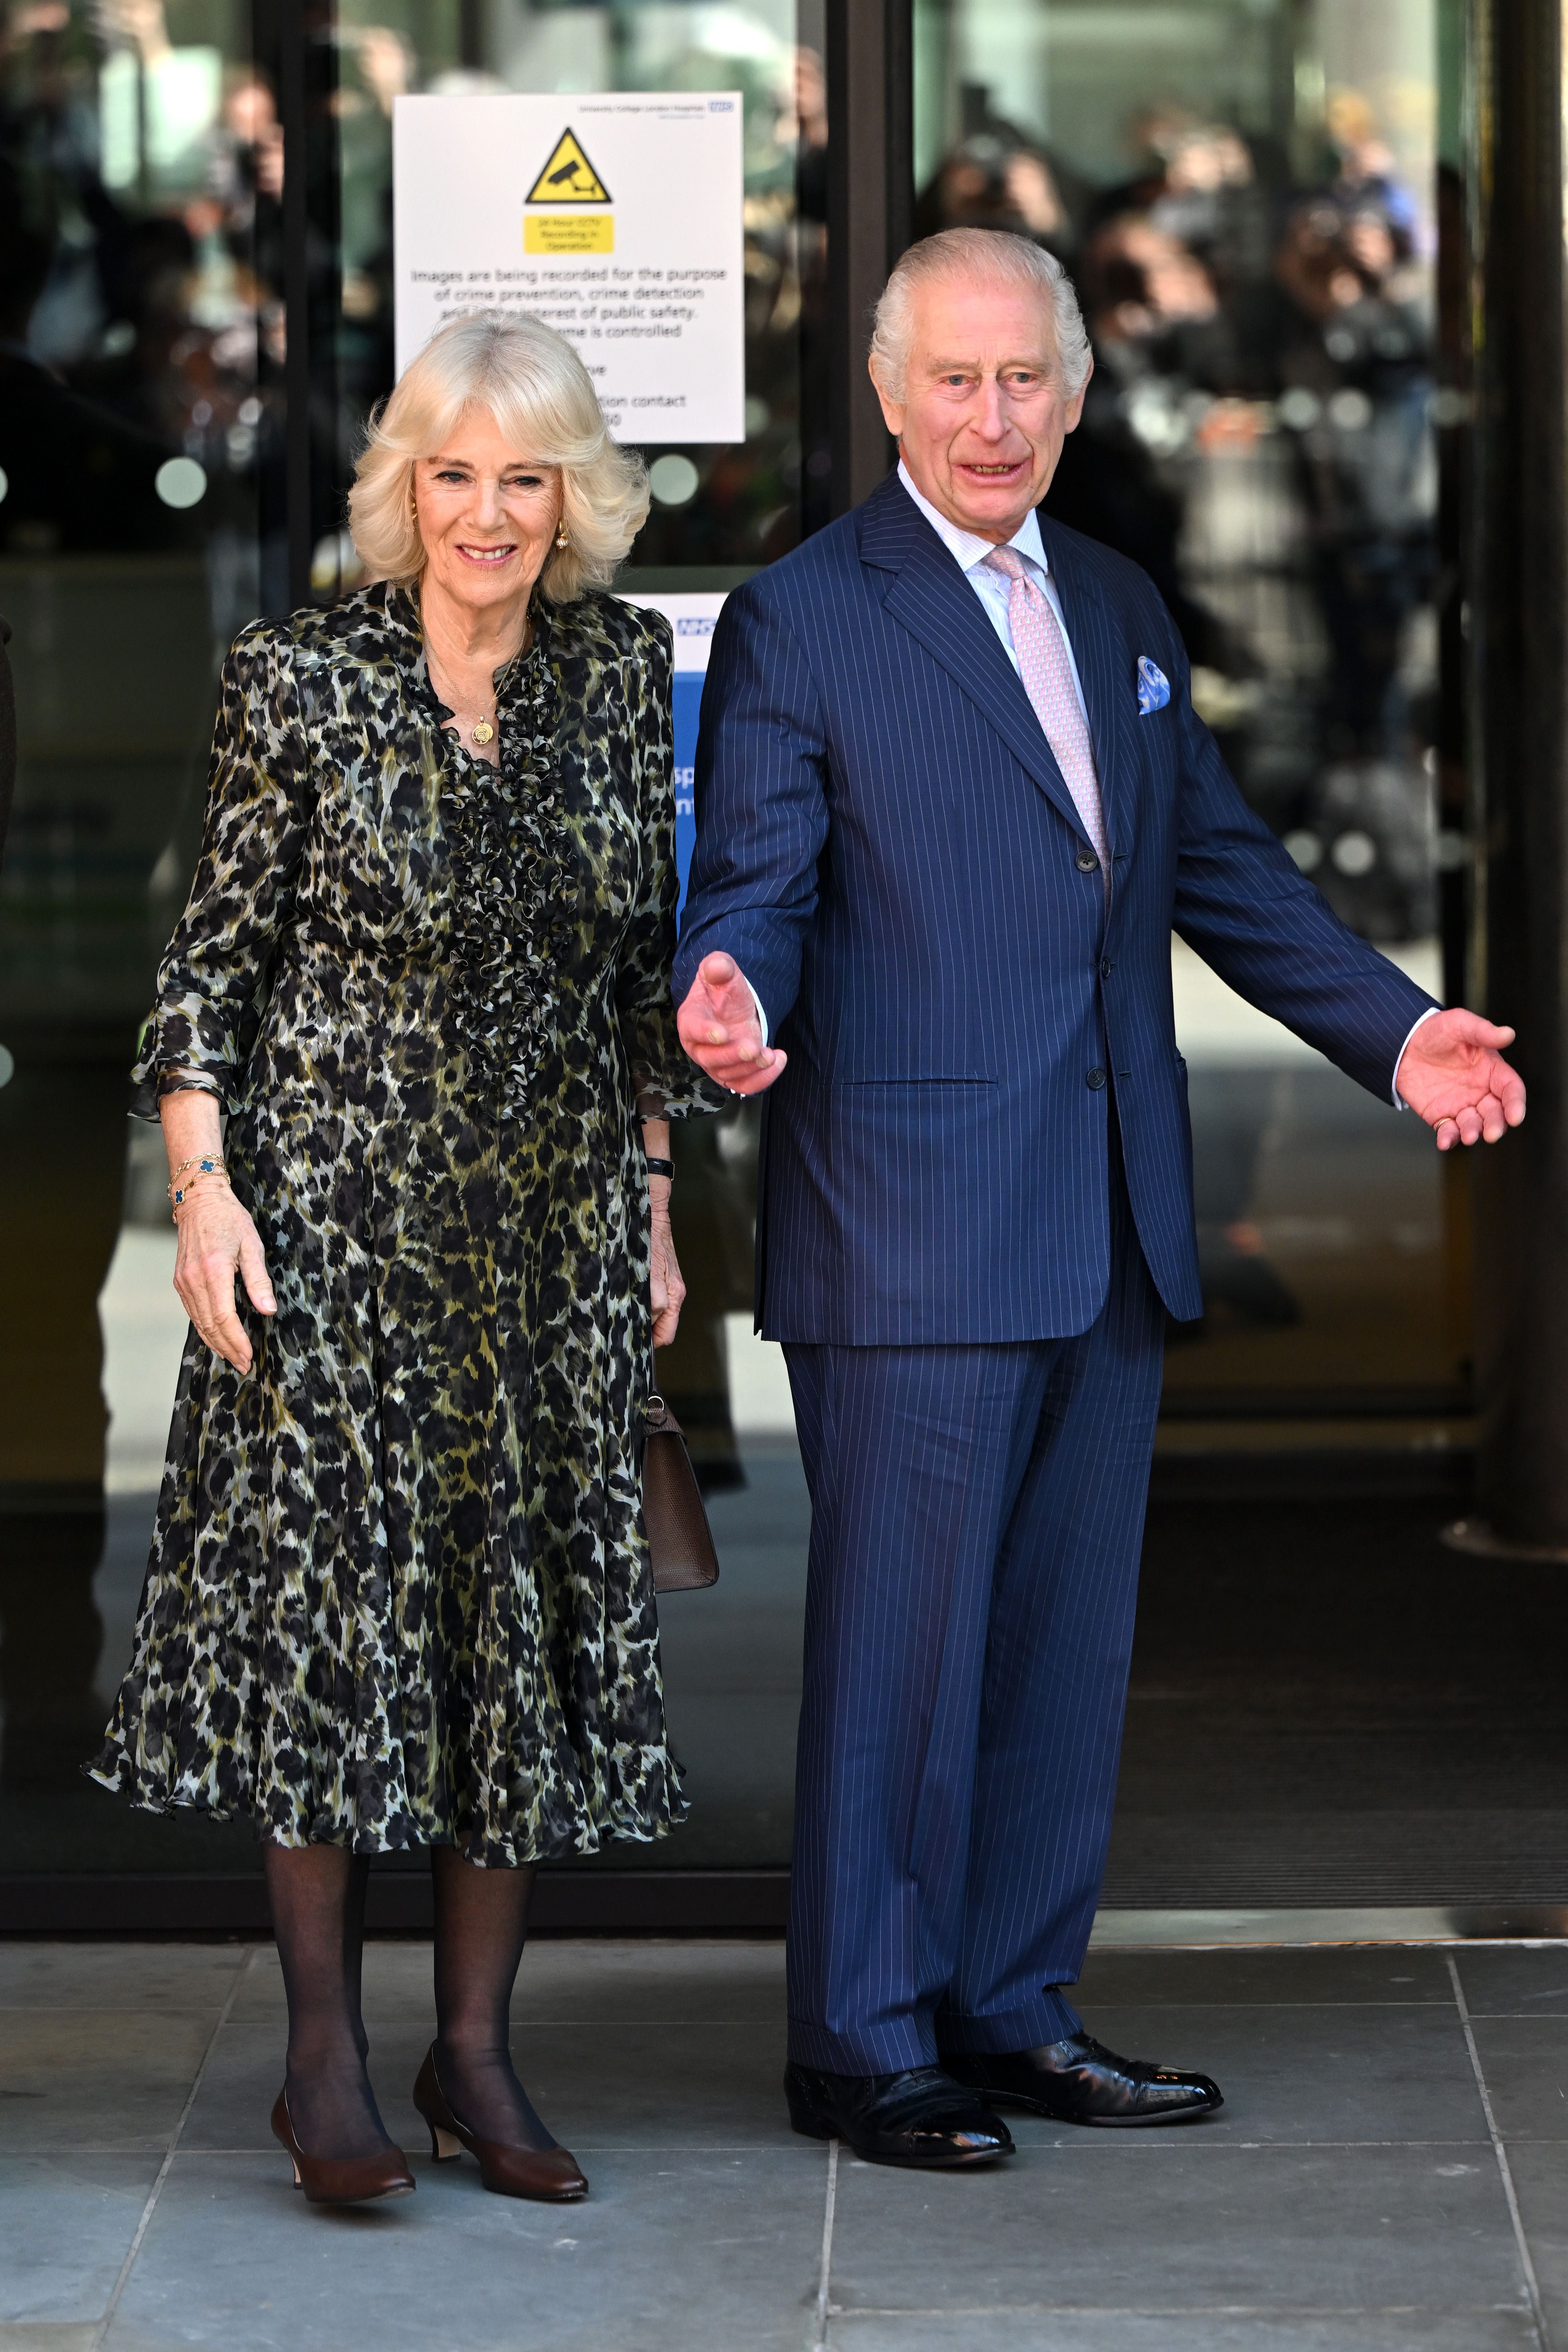 El rey Carlos III ha retomado su agenda pública, acompañado de su mujer, la reina Camila, tras su diagnóstico de cáncer. (Suzanne Plunkett - WPA Pool/Getty Images)